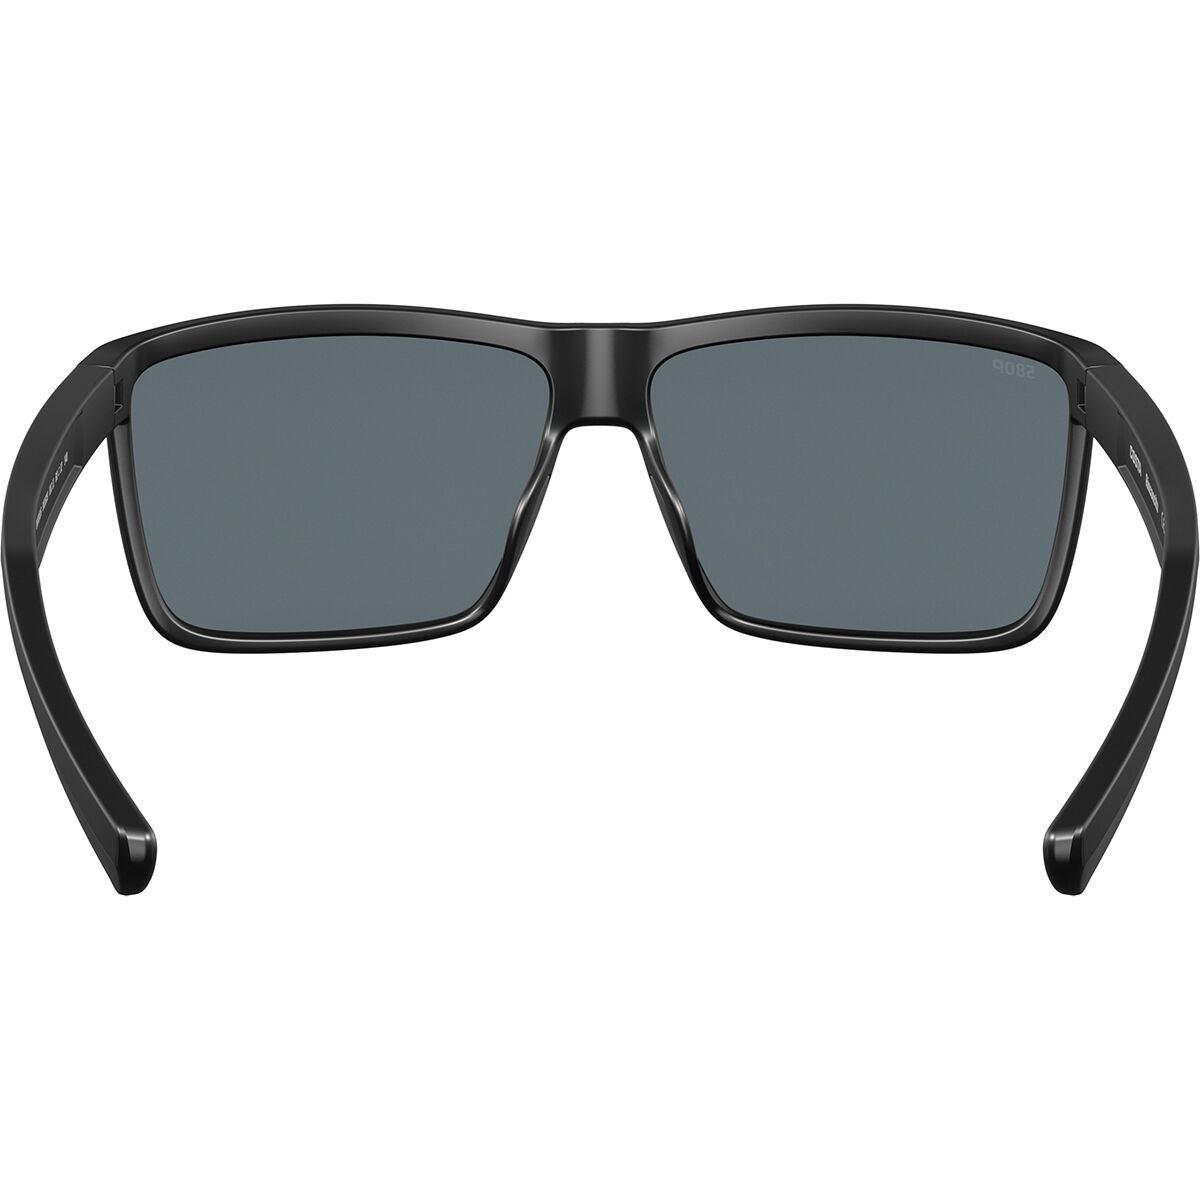 Costa Rinconcito 580P Polarized Sunglasses - Men